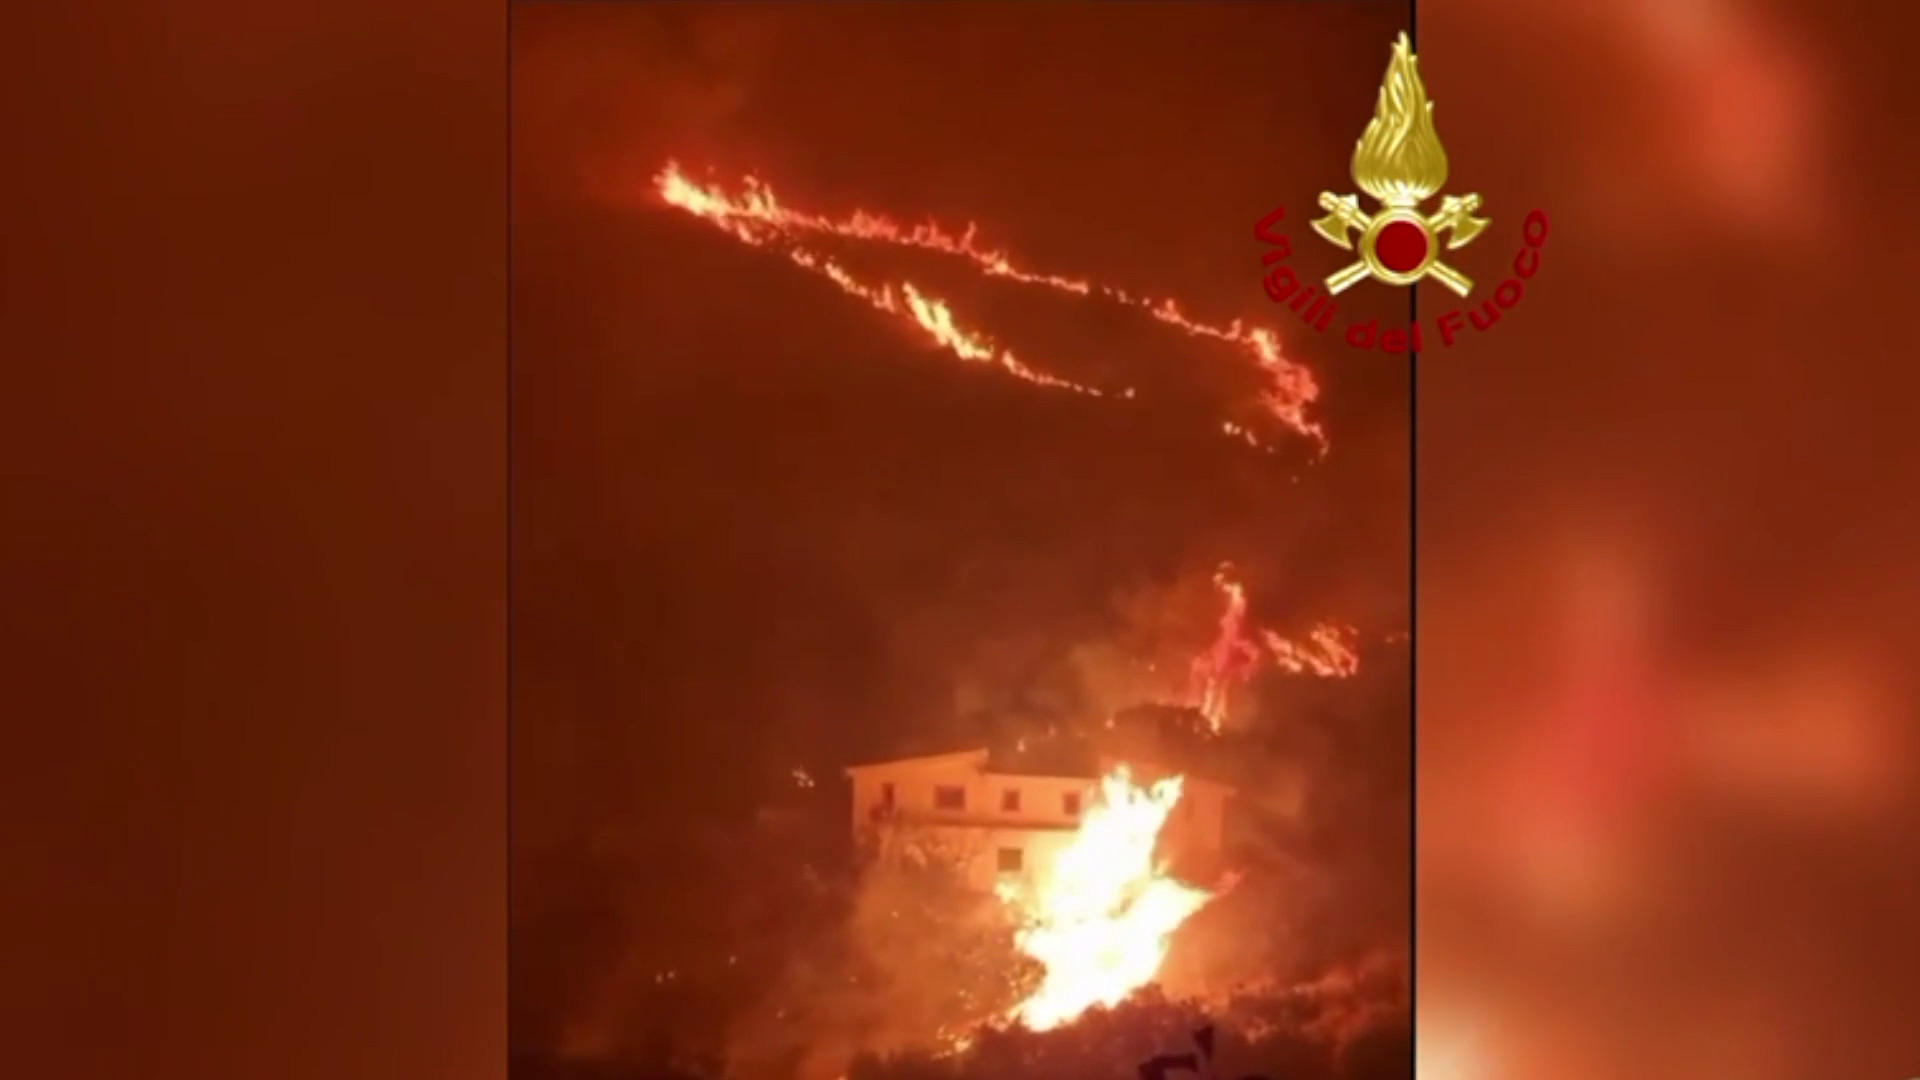 Palermo, incendi da Brancaccio a Gibilrossa. Le immagini